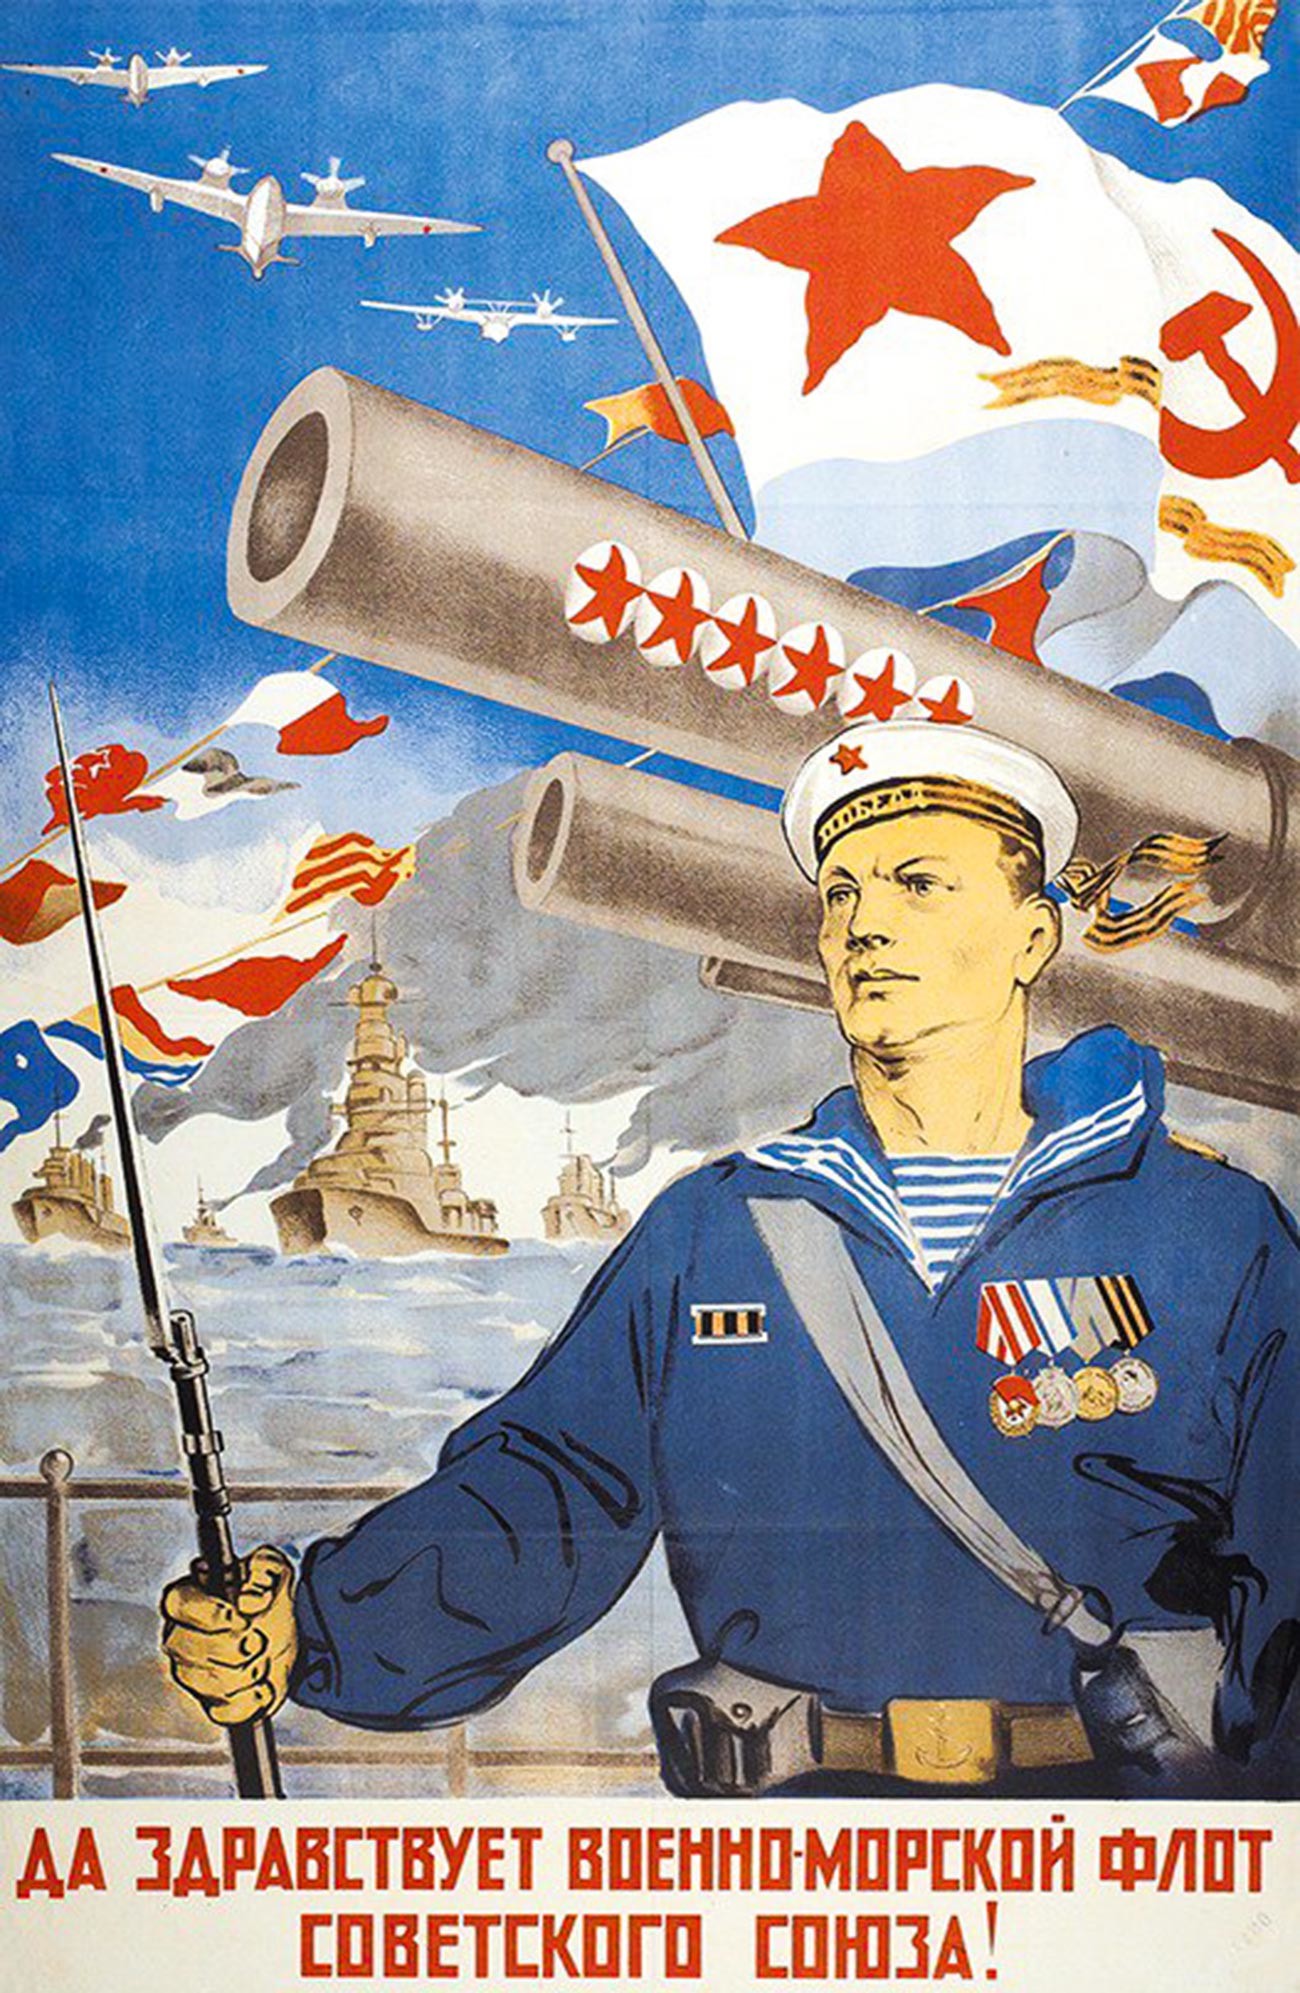 « Vive la marine de l’Union soviétique ! »